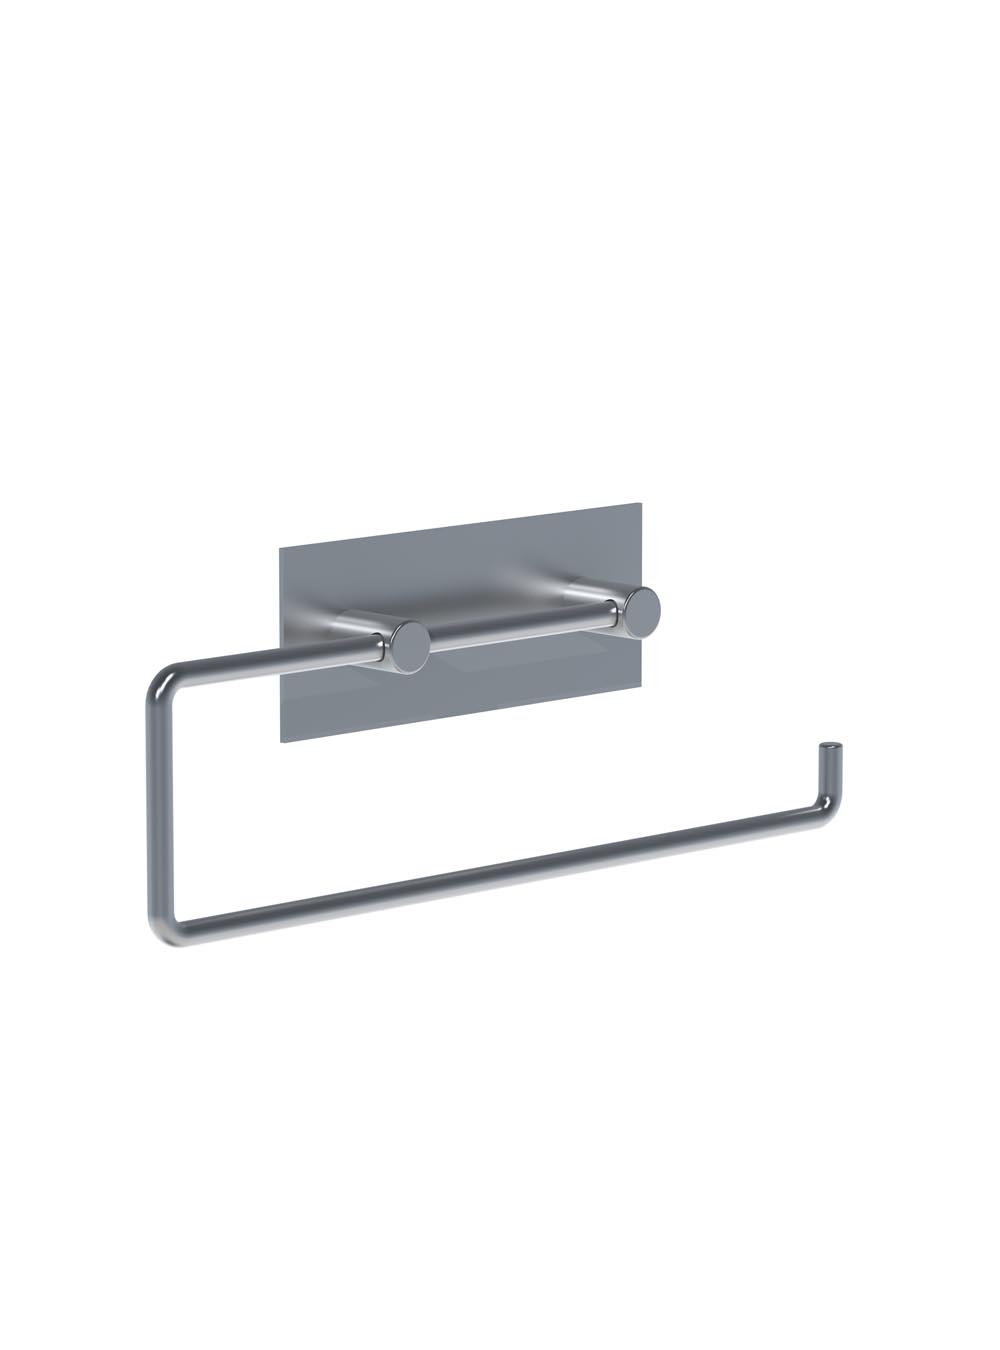 T13L: Papierhalter für zwei WC-Rollen oder eine Papierhandtuchrolle (Küchenrolle), Bügellänge 287 mm.